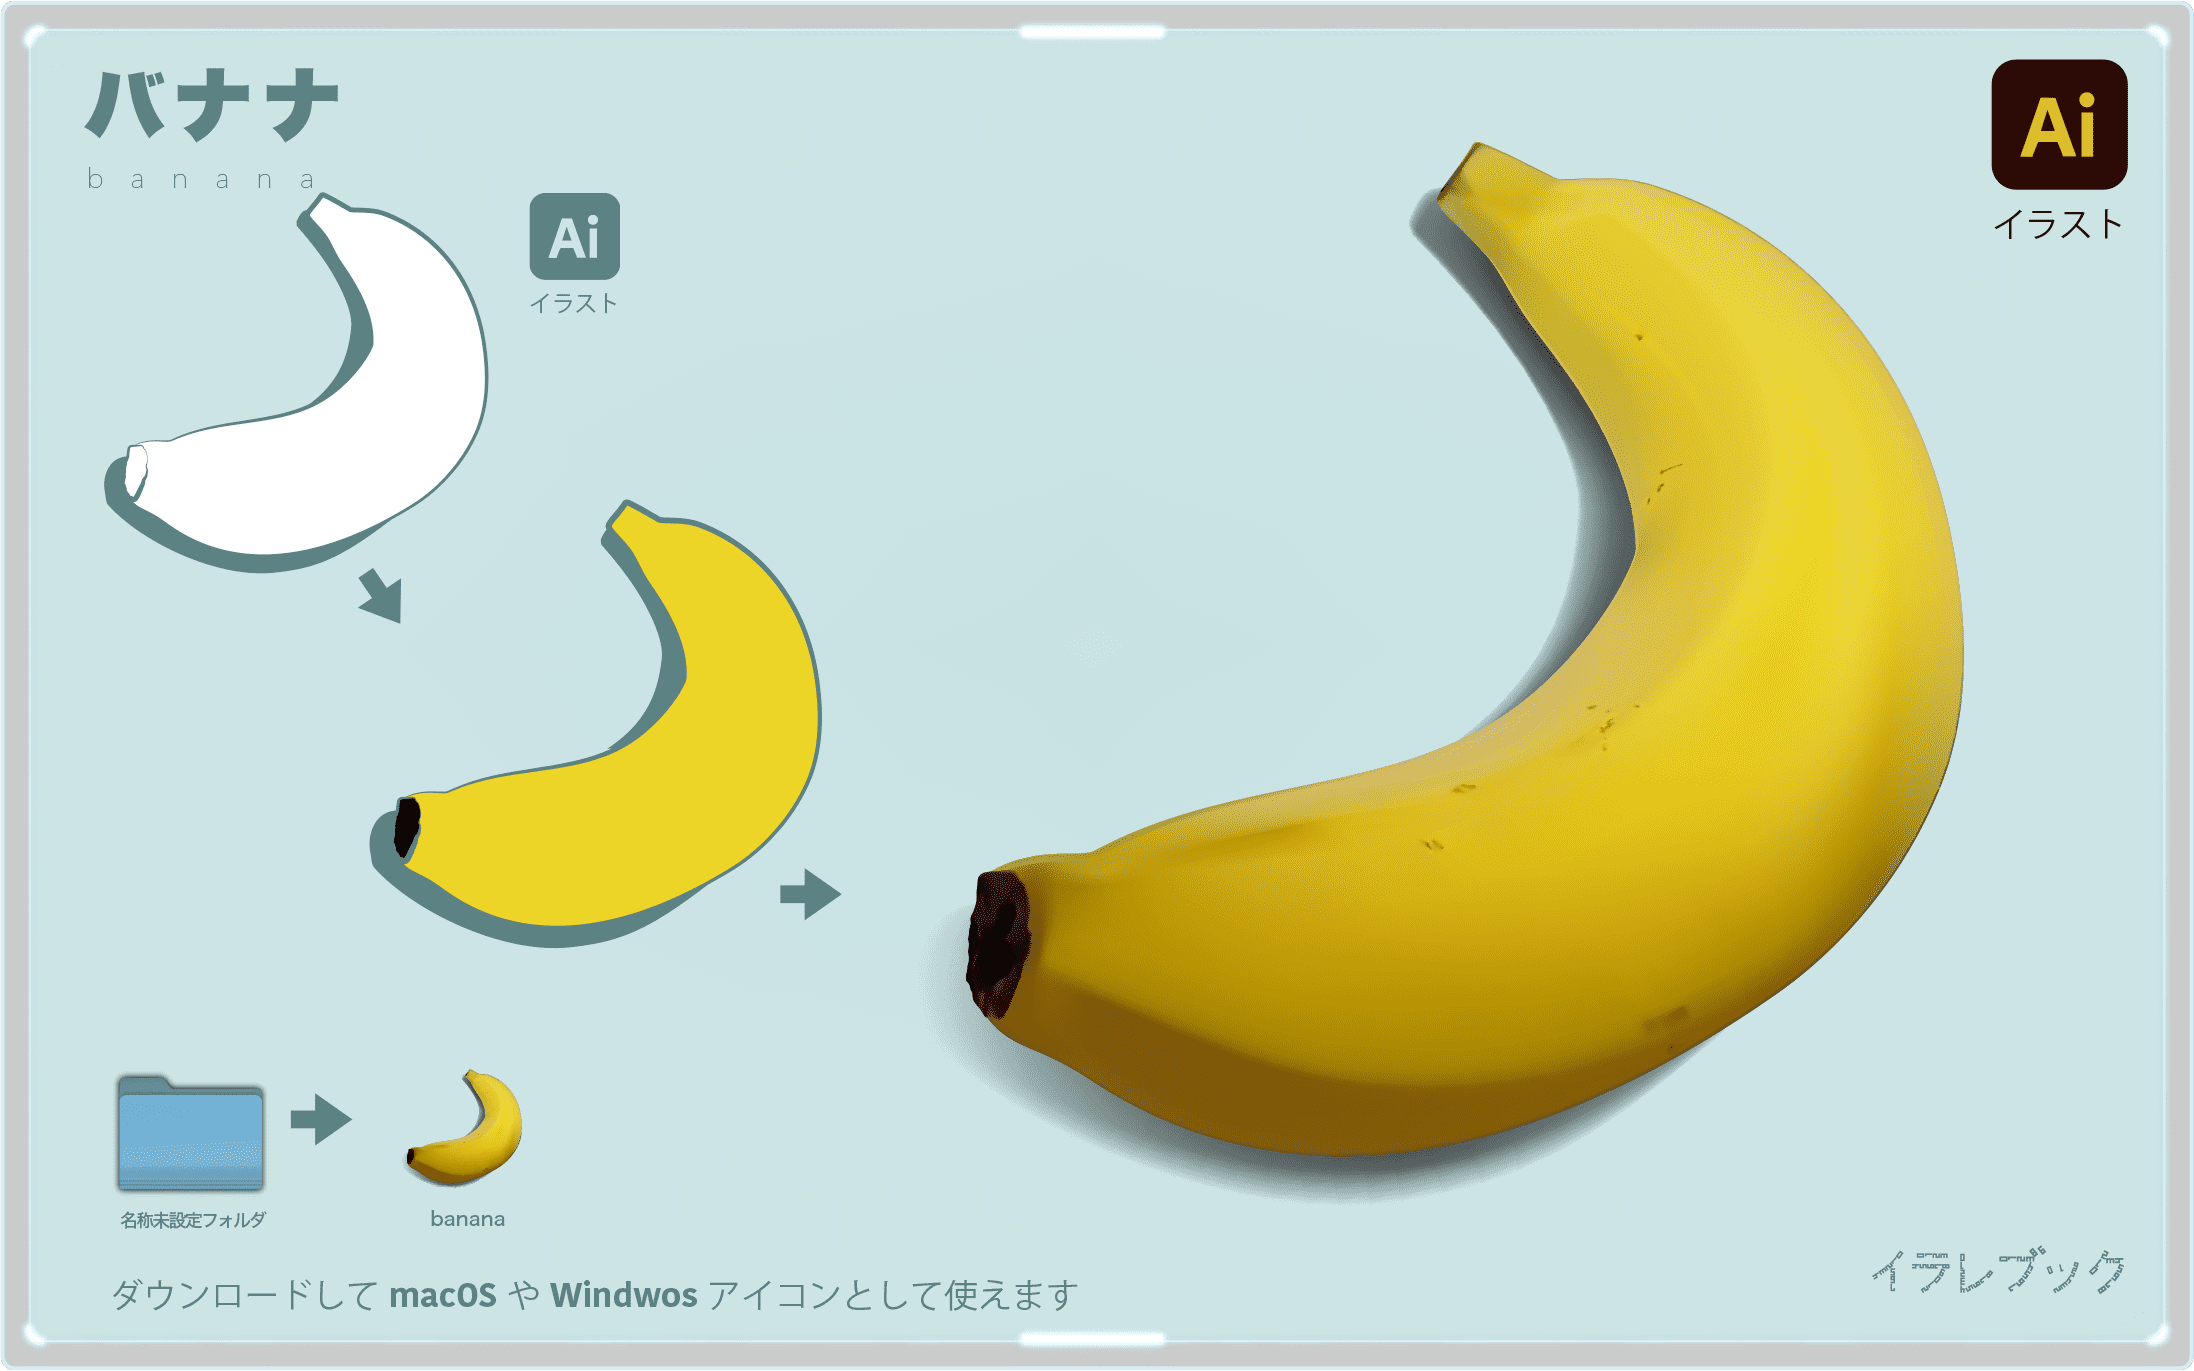 バナナイラスト 一年中が旬 ライフサイクルや栄養 美味しいバナナの選び方 イラレマンガ